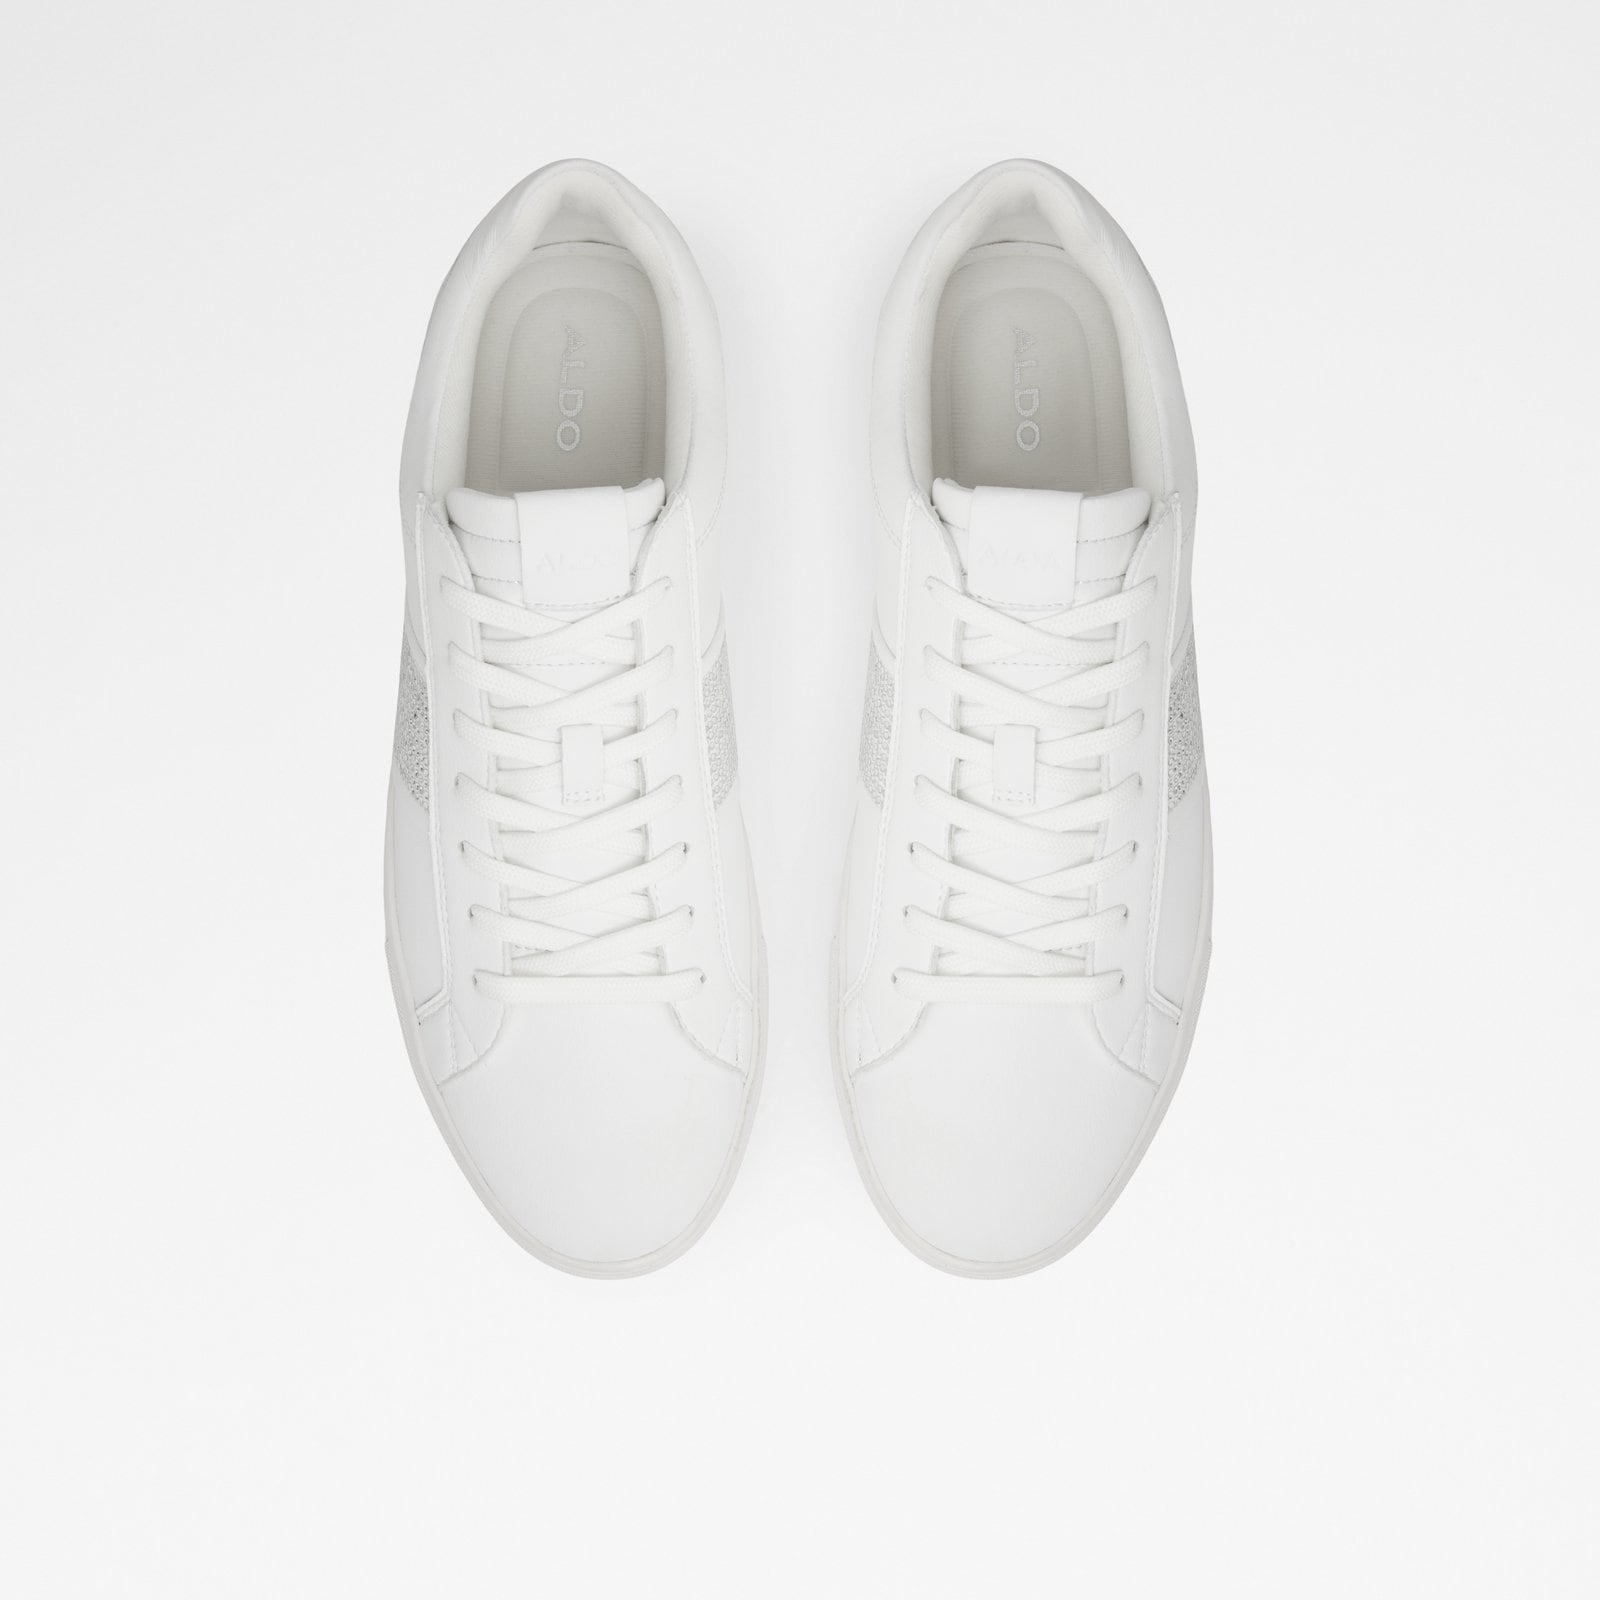 Pondia Men Shoes - White - ALDO KSA